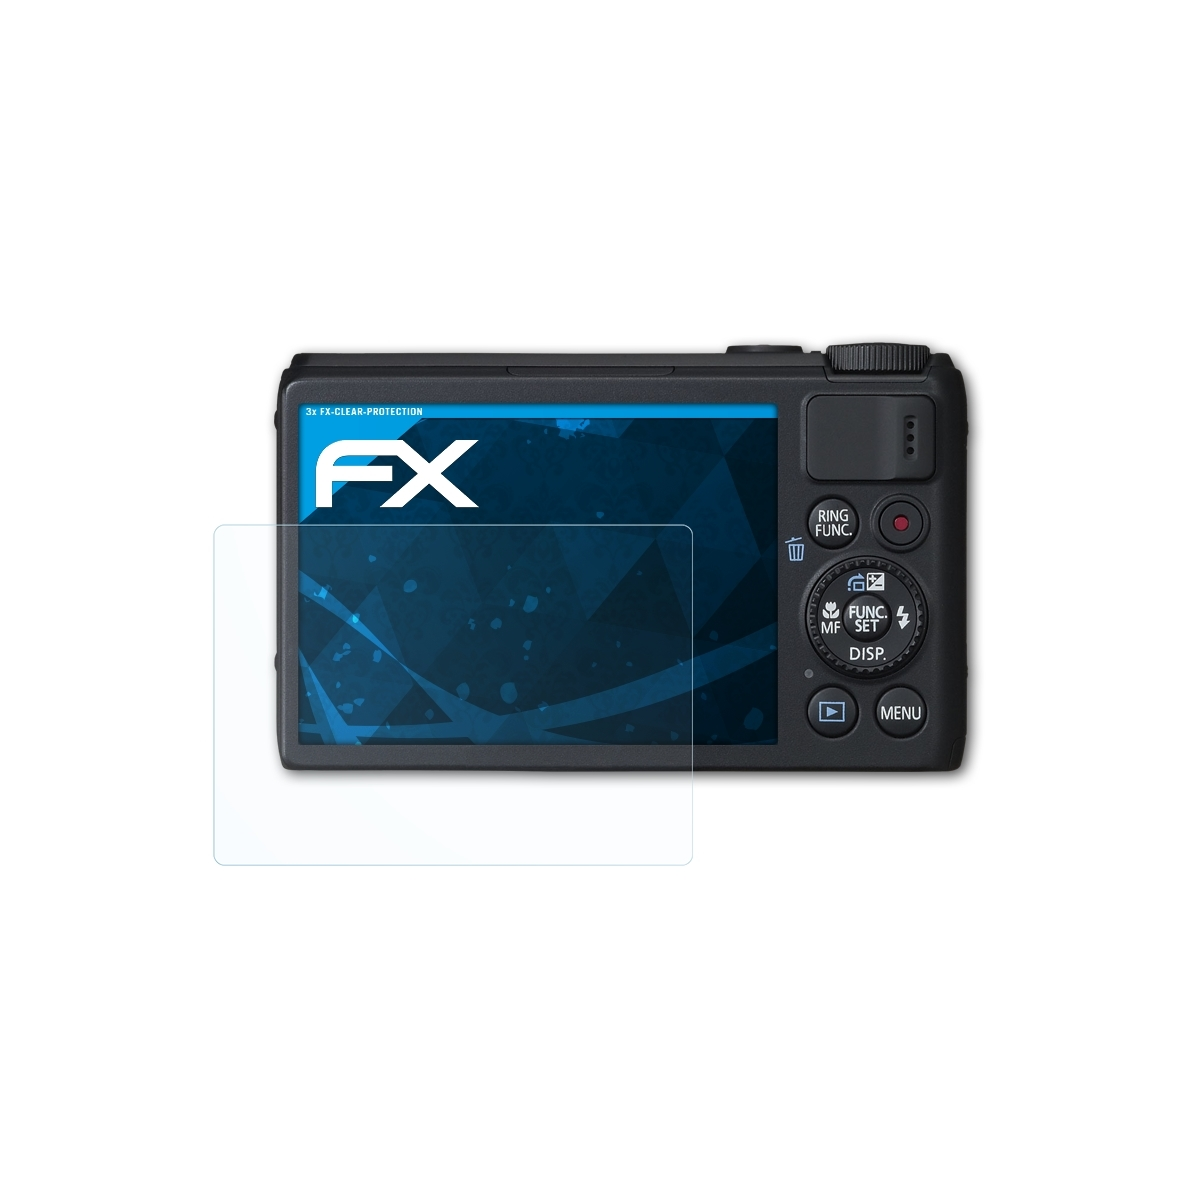 Displayschutz(für FX-Clear S100) PowerShot Canon ATFOLIX 3x